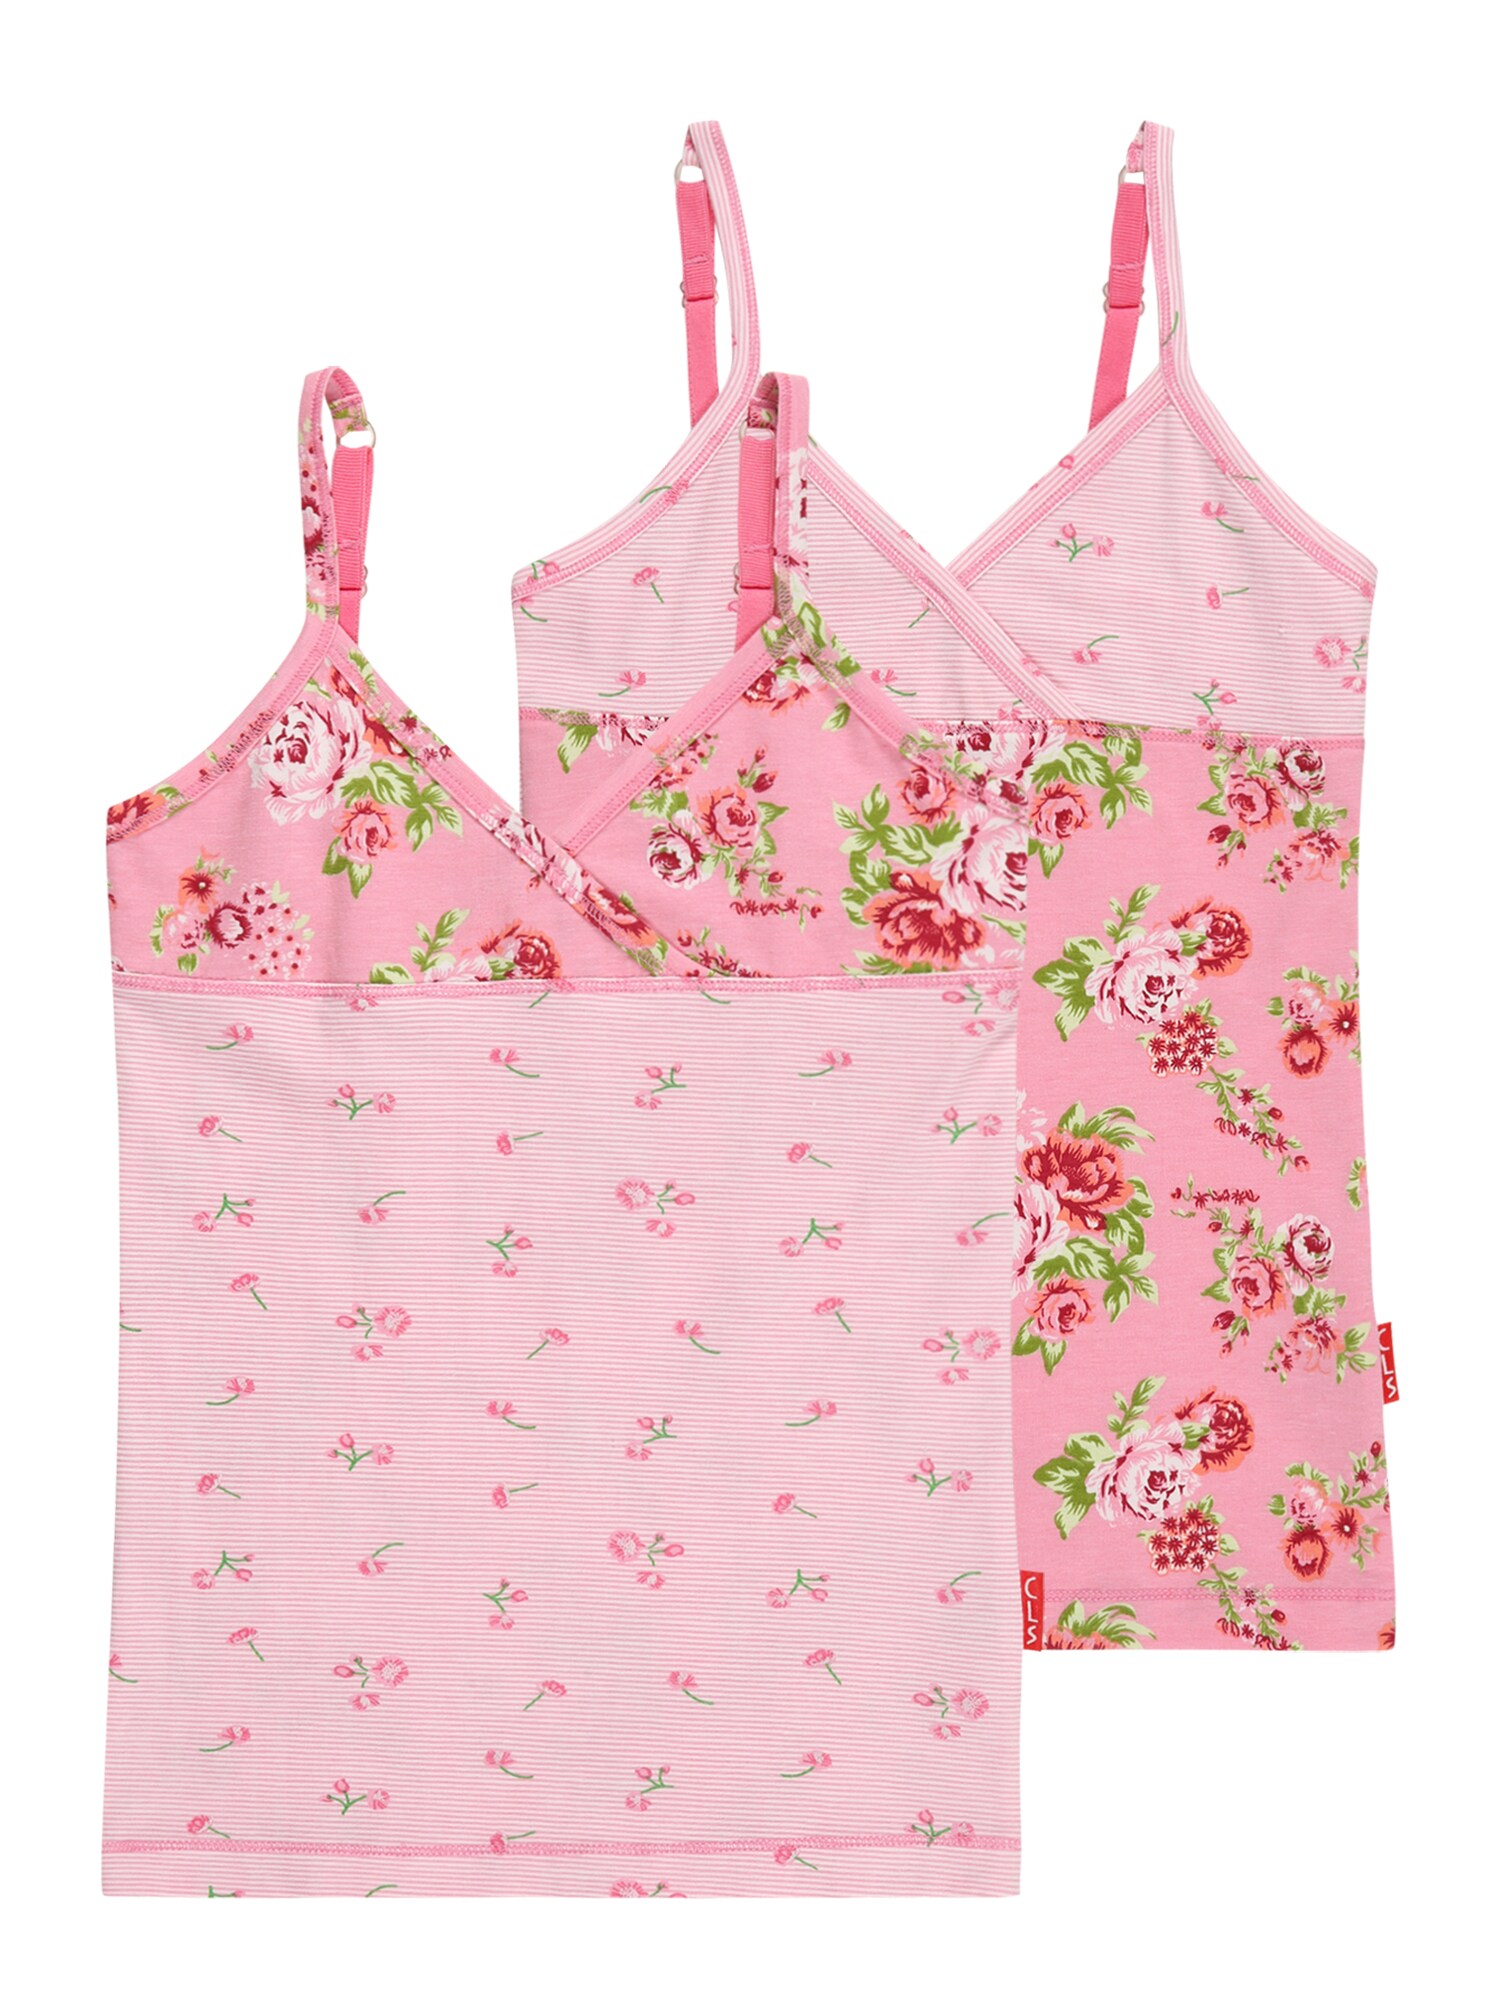 Claesen's Apatiniai marškinėliai žalia / šviesiai rožinė / skaisti avietinė ar rubino spalva / balta